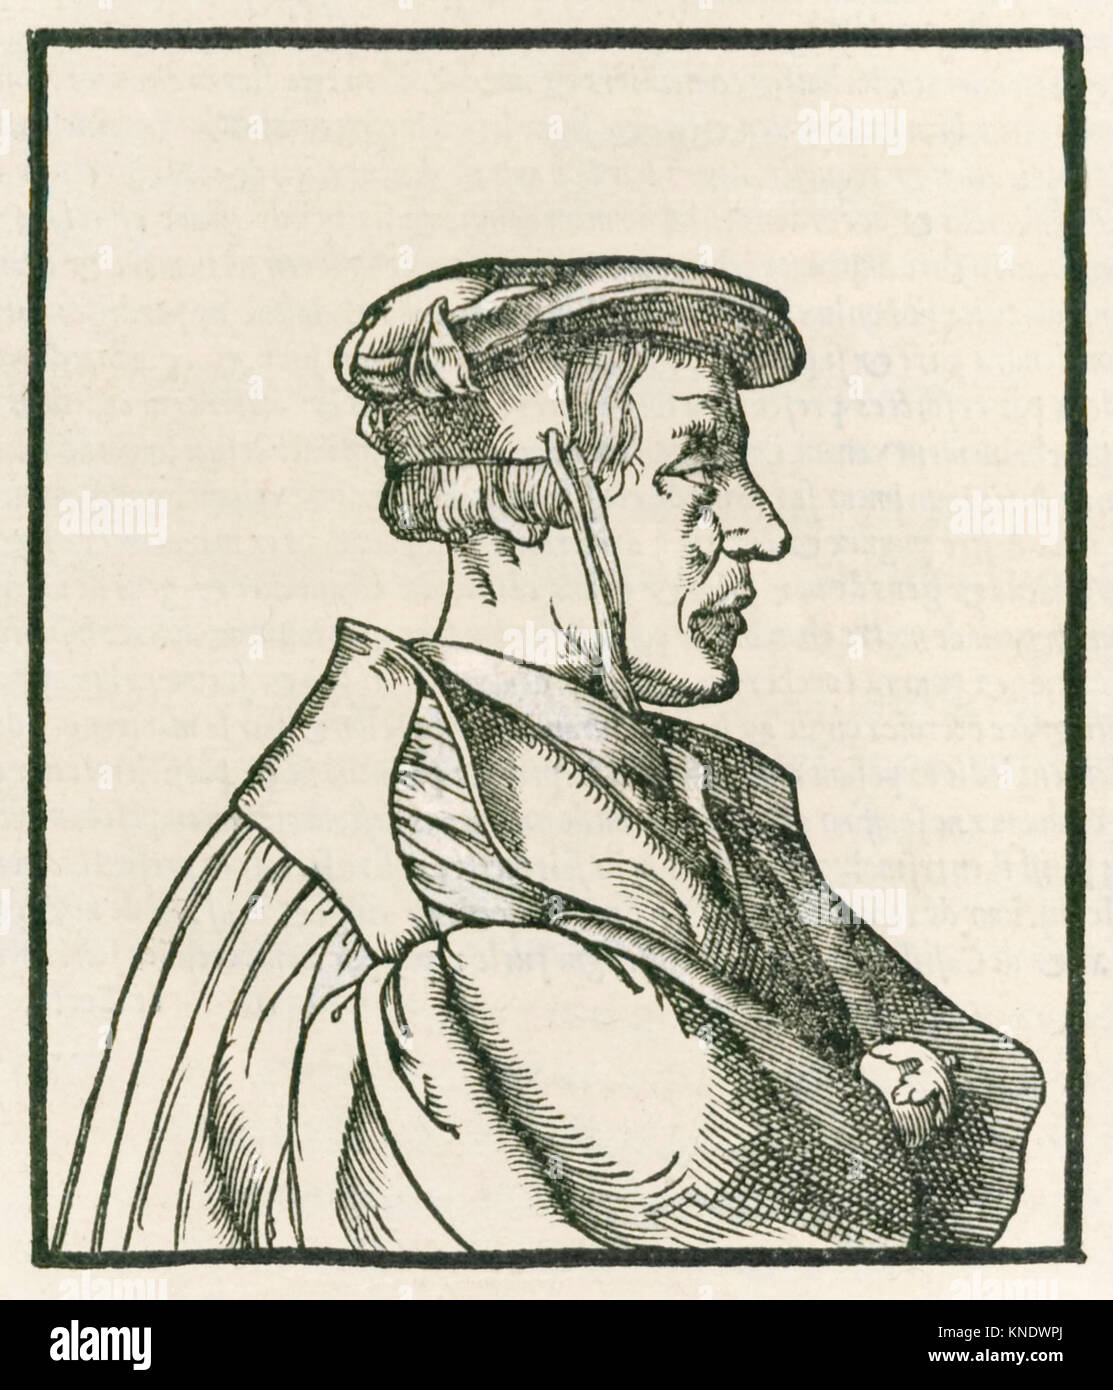 Heinrich Cornelius Agrippa von Nettesheim (1486-1535) Titel Seite Gravur von 'De Helvetica philosophia libri tres" im Jahre 1533 veröffentlicht. Weitere Informationen finden Sie unten. Stockfoto